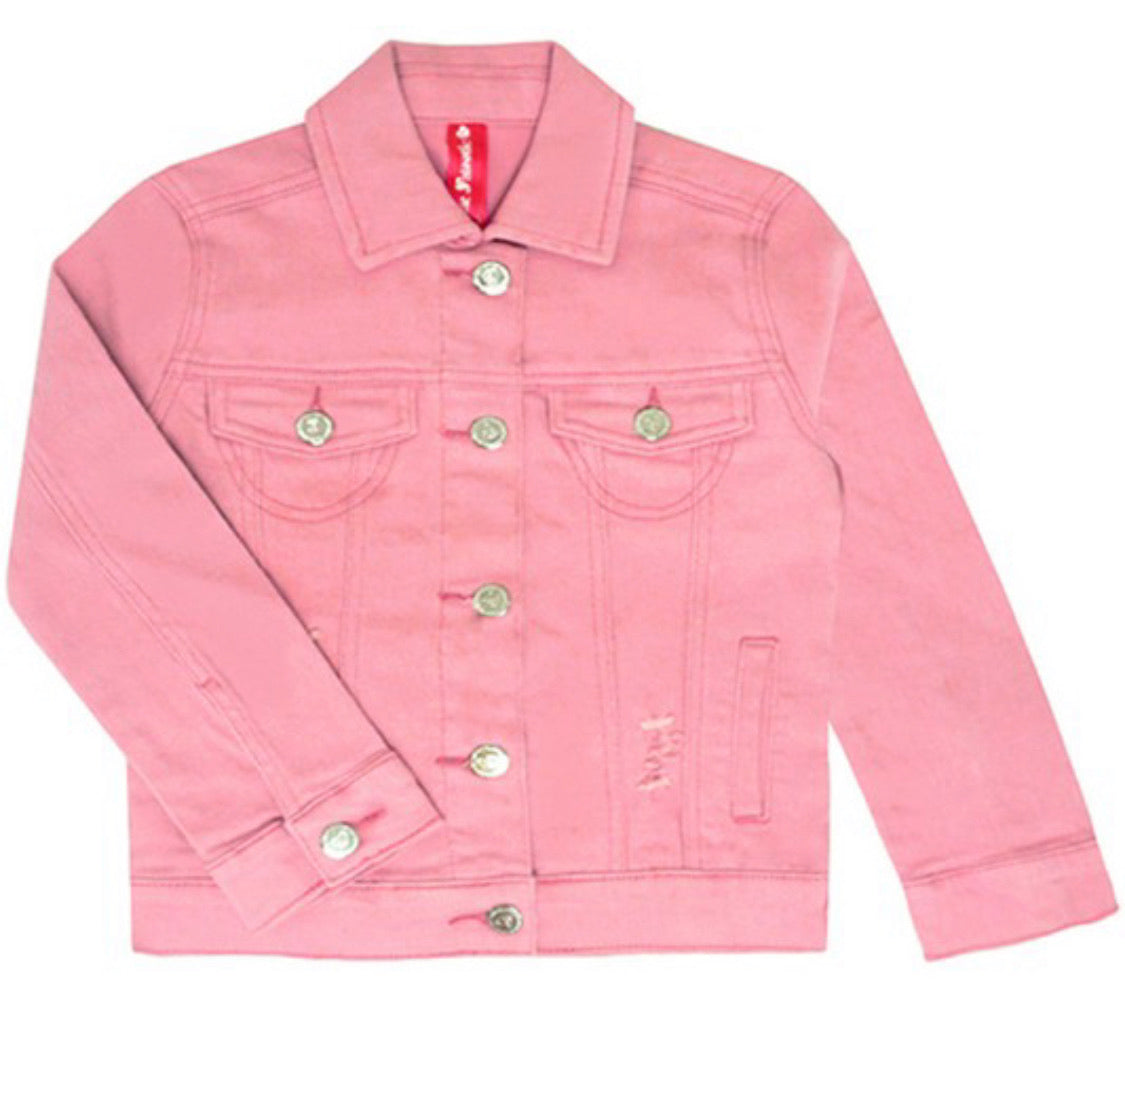 Denim Jacket W/ Circle Monogram - Sprinkled With Pink